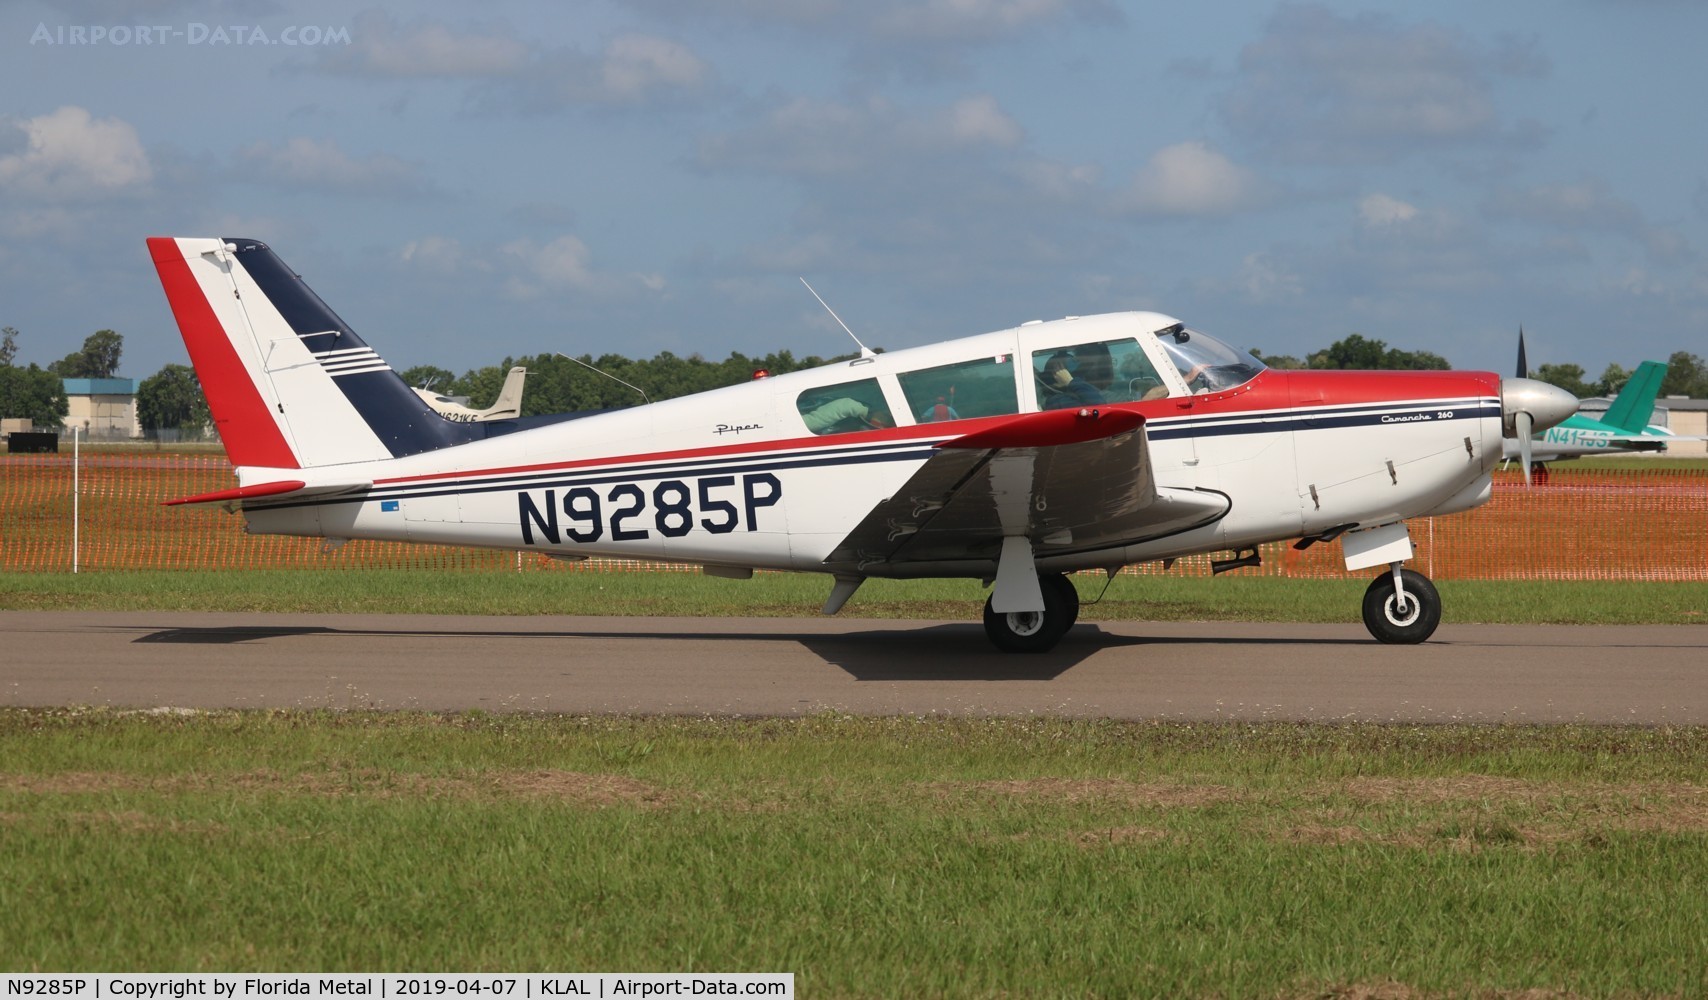 N9285P, 1968 Piper PA-24-260 C/N 24-4785, PA-24